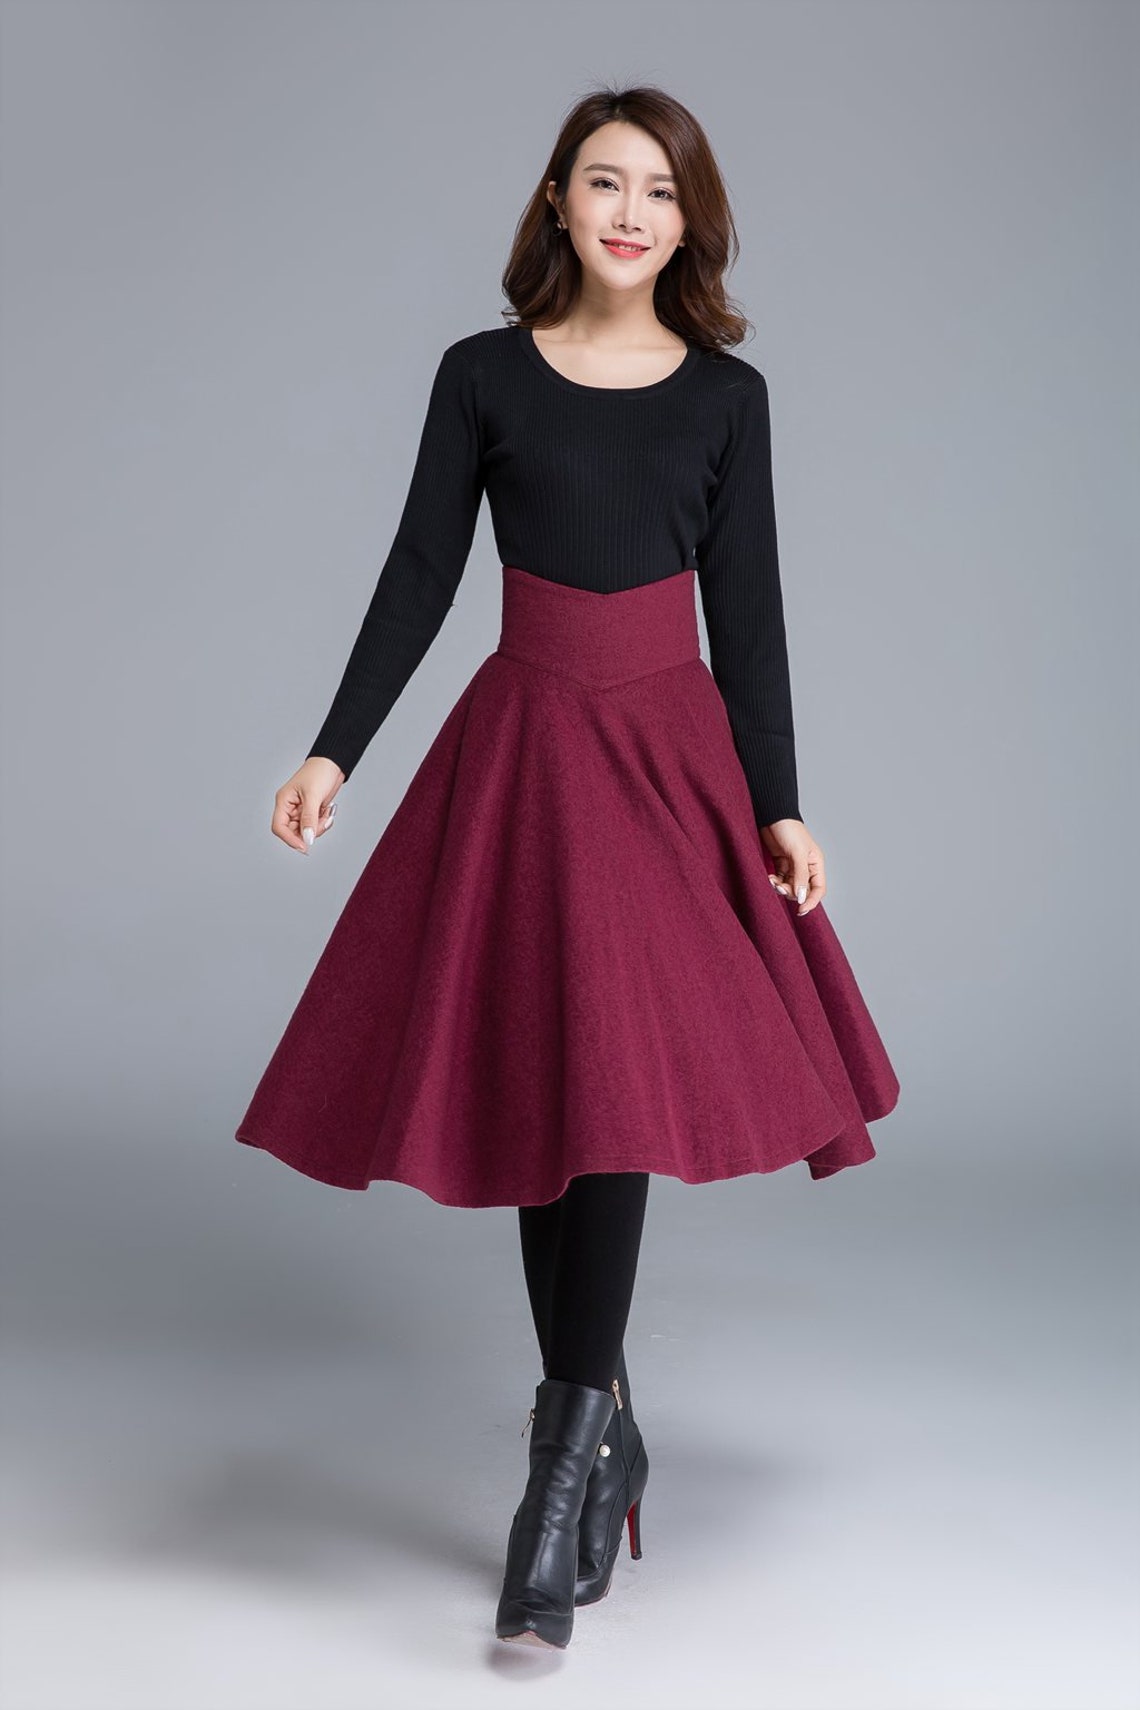 High waist Flared Midi skirt in red wool skirt Circle skirt | Etsy